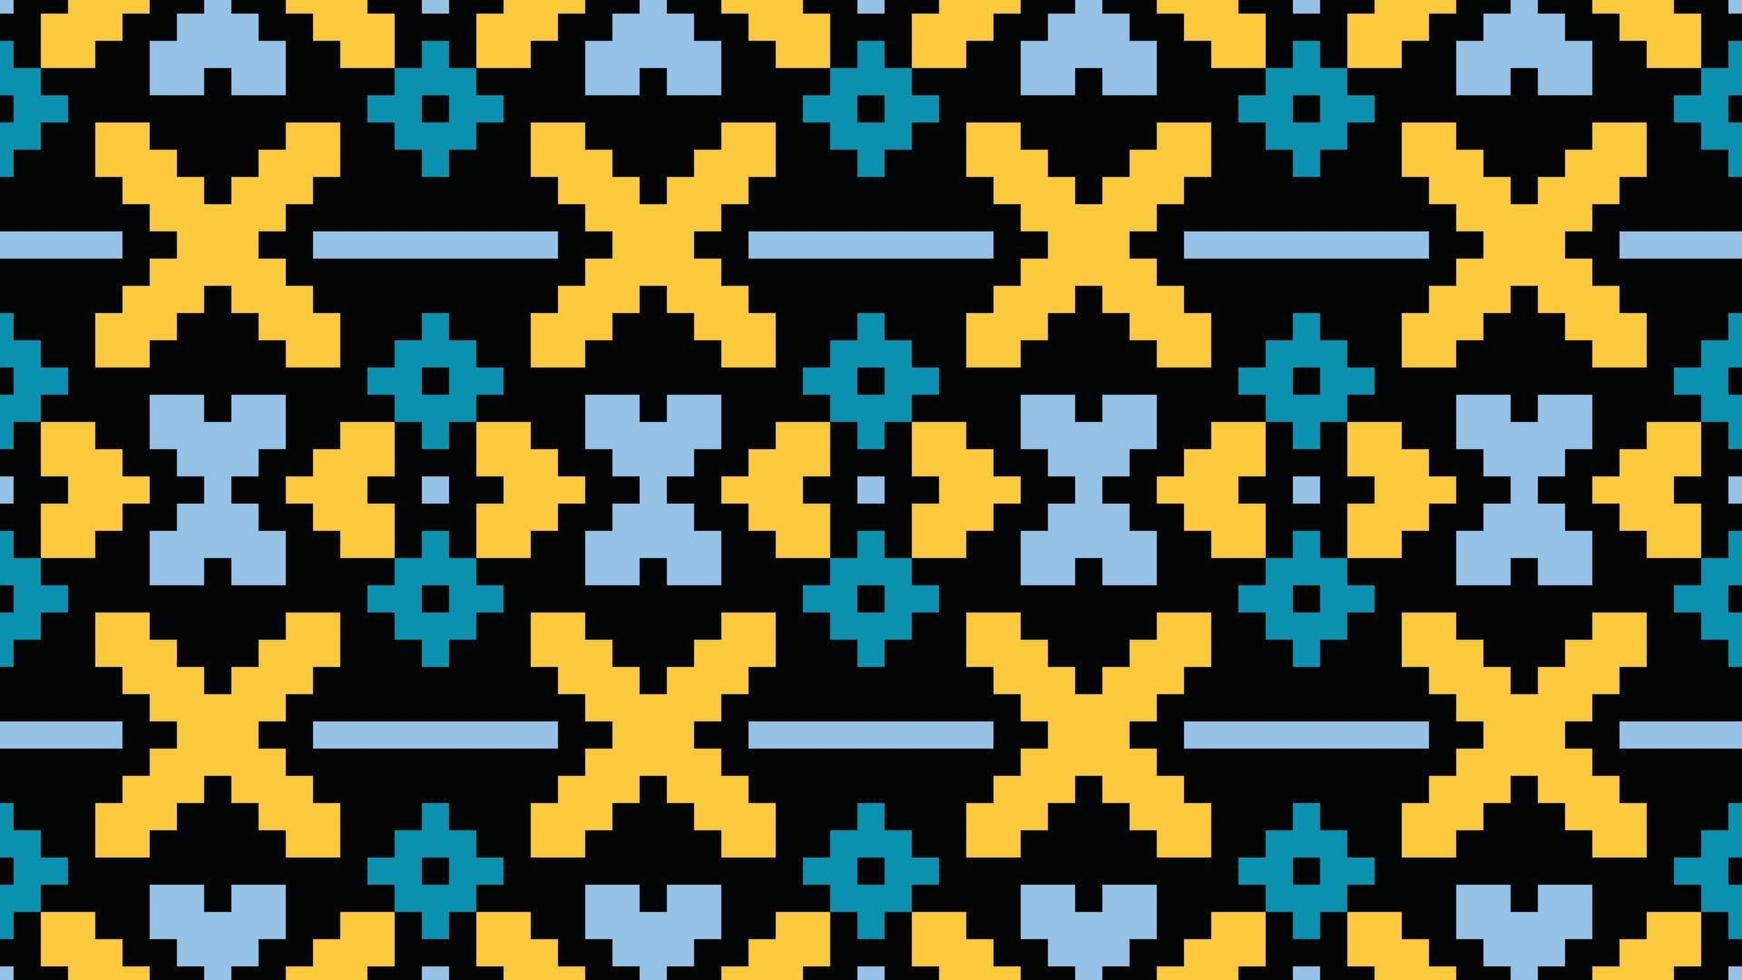 aztec navajo nation afrikanisches stoffdesign für drucke hintergrundbild textur kleid mode stoff papier teppich textilindustrie vektor